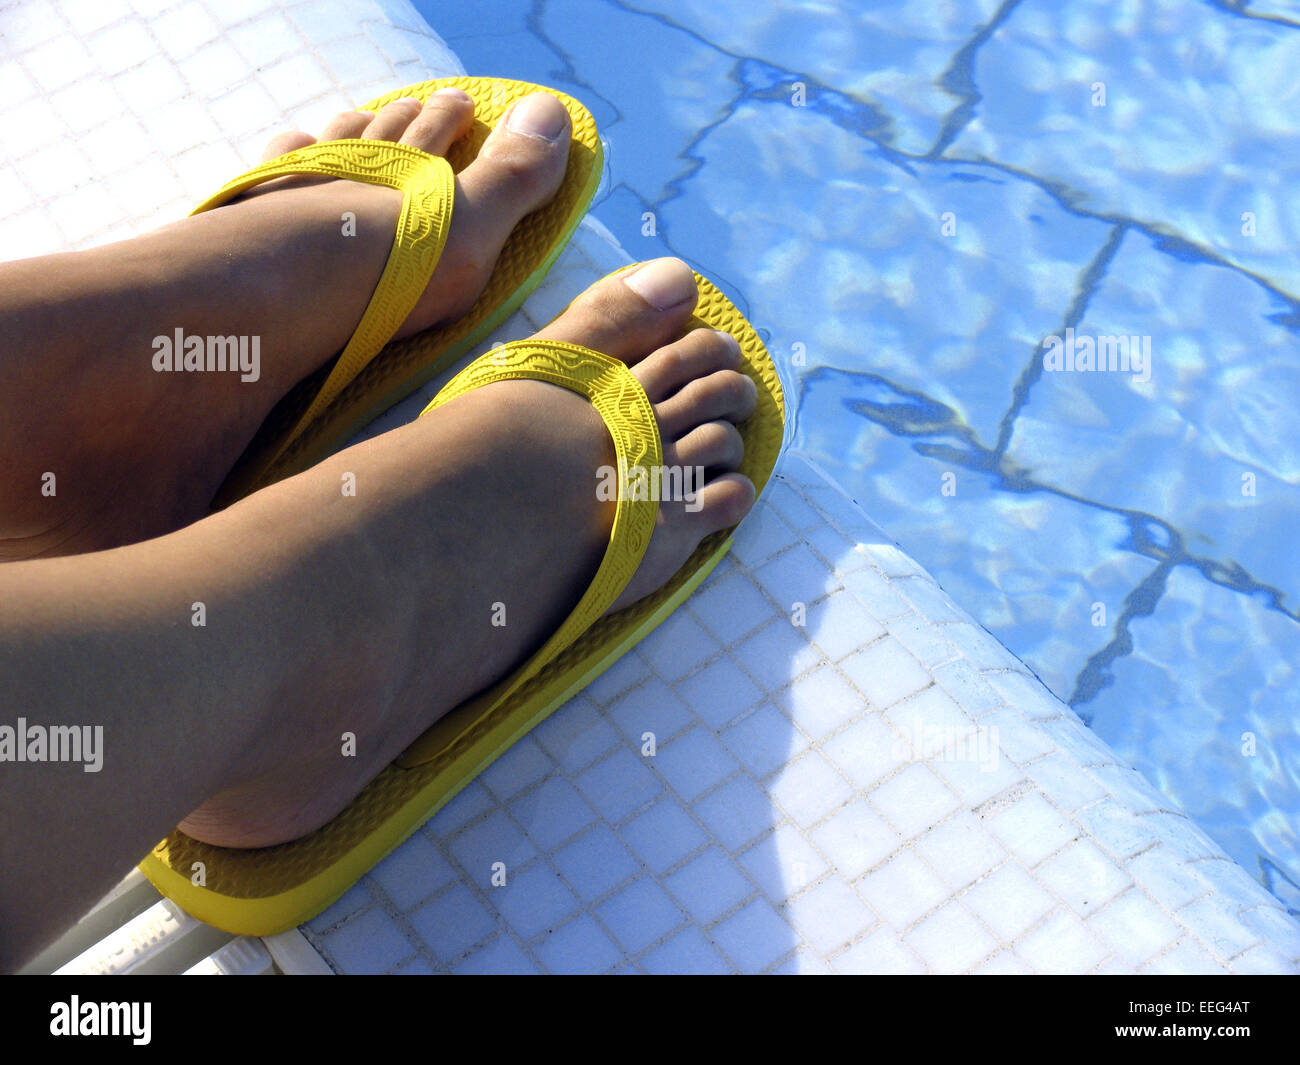 Aussen Pool Fuesse Frauenfuesse Schuhe Badeschuhe Flip-Flops Farbe Gelb  Poolrand Wasser Blau Sommer Urlaub Freizeit Holiday Swim Stock Photo - Alamy